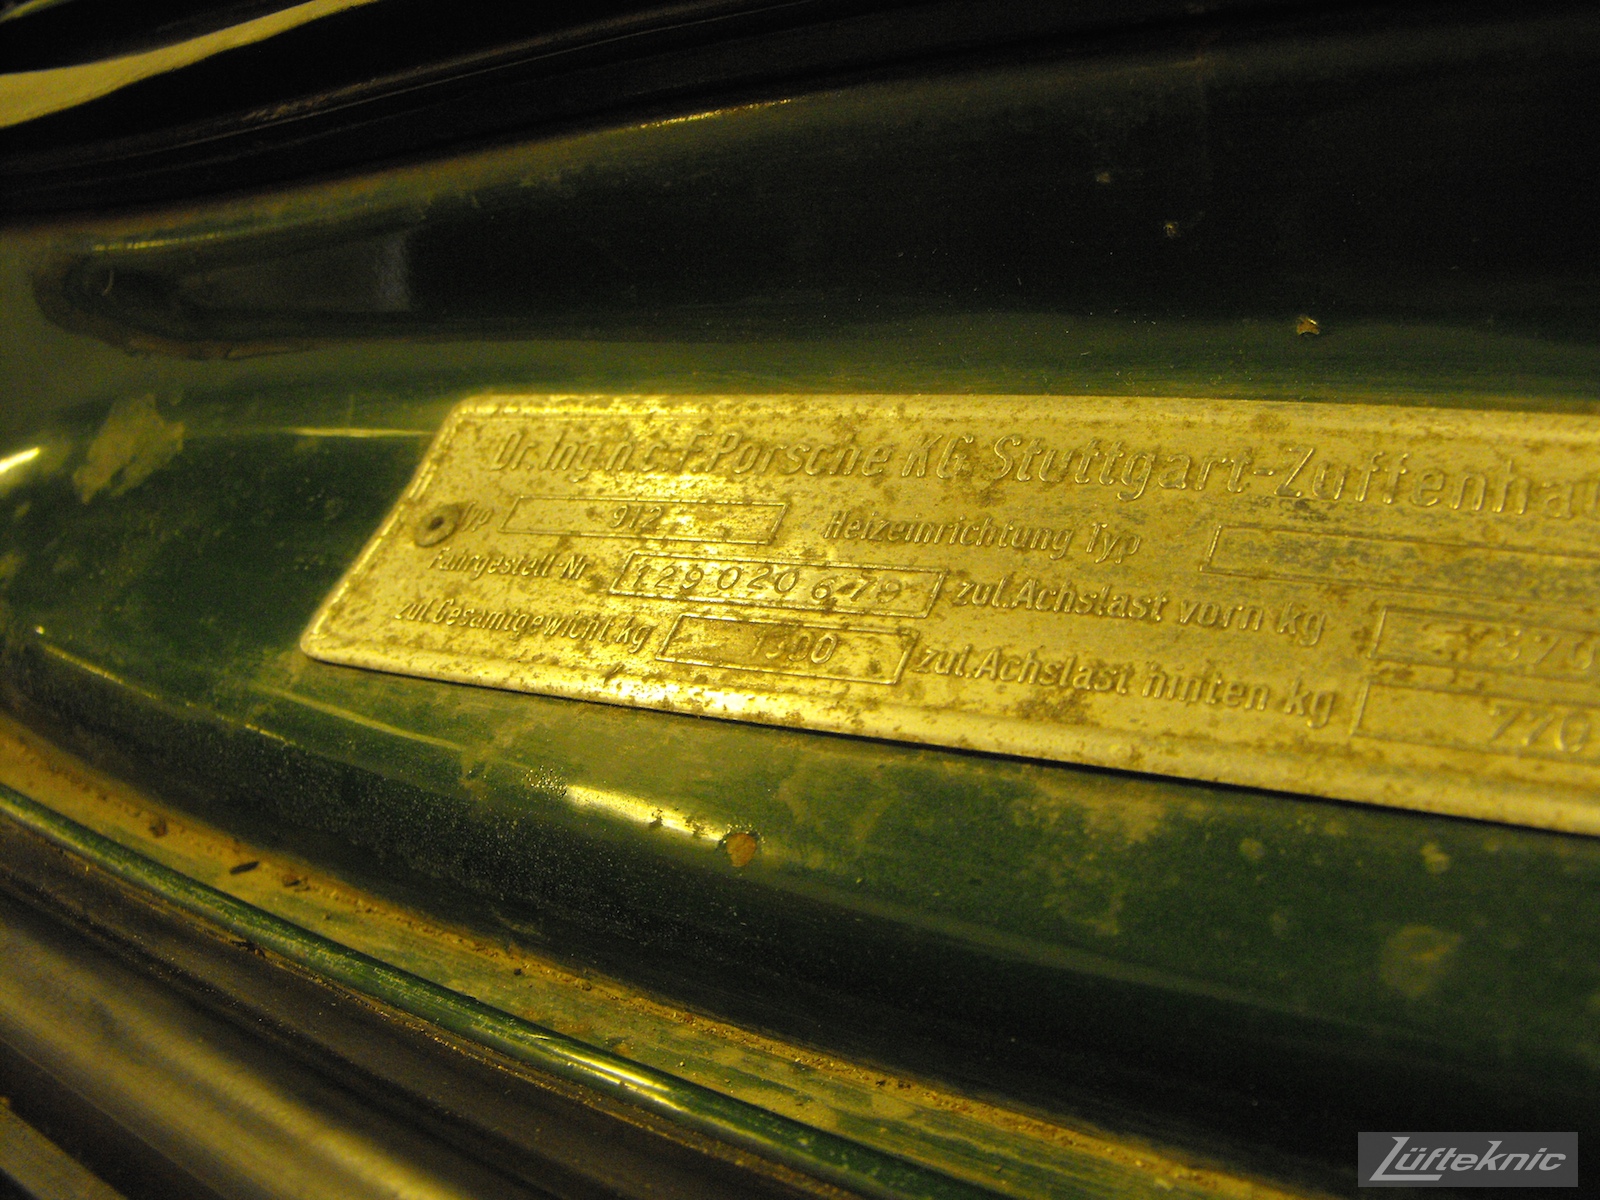 The original build plate of an Irish Green Porsche 912 undergoing restoration at Lufteknic.